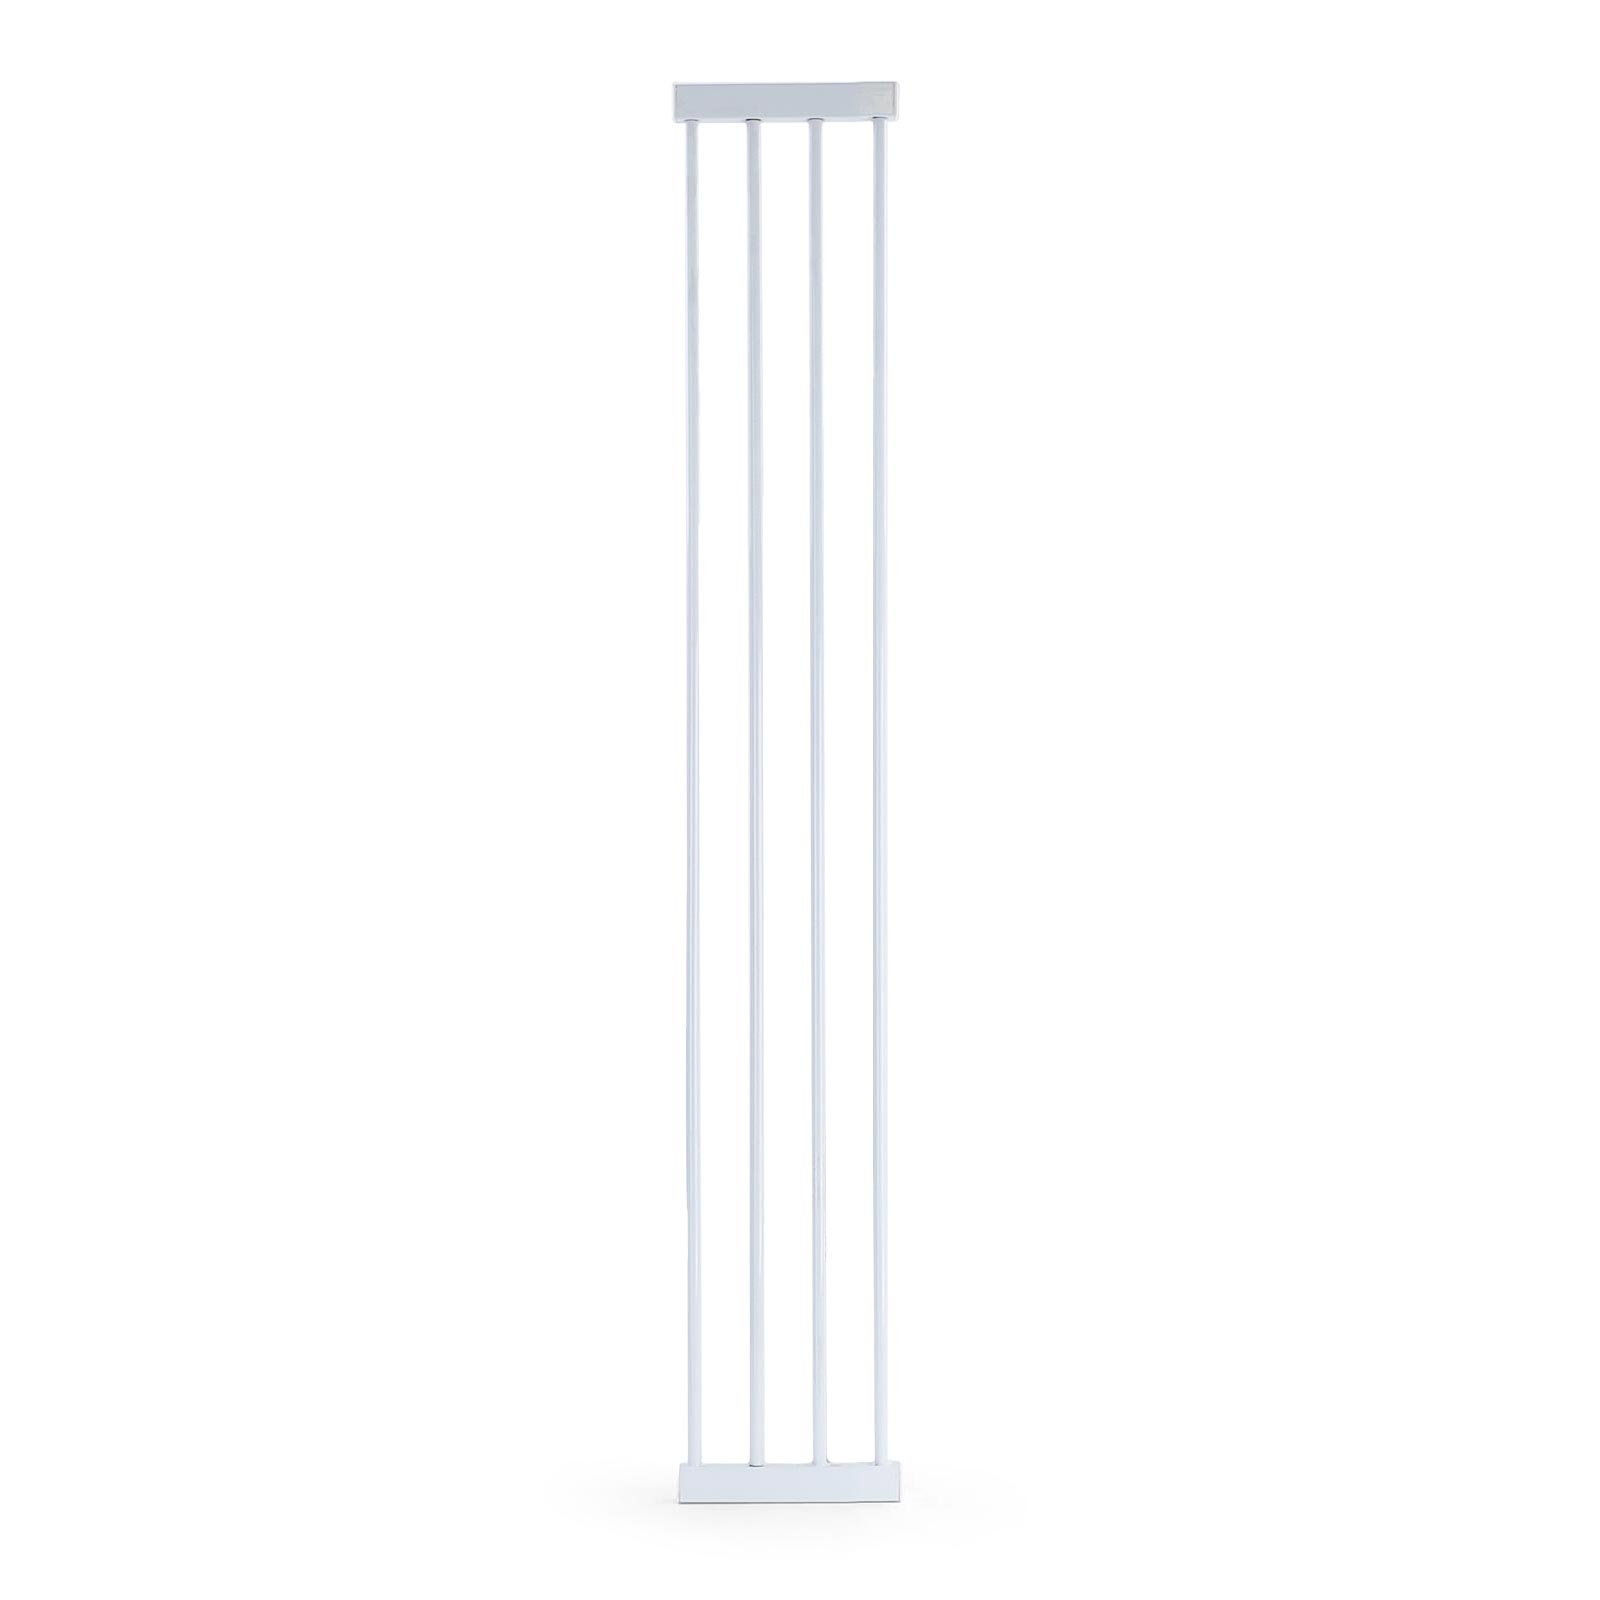 Absperrgitter Treppenschutzgitter Metall weiß Rampe 83-96cm  120cm hoch 